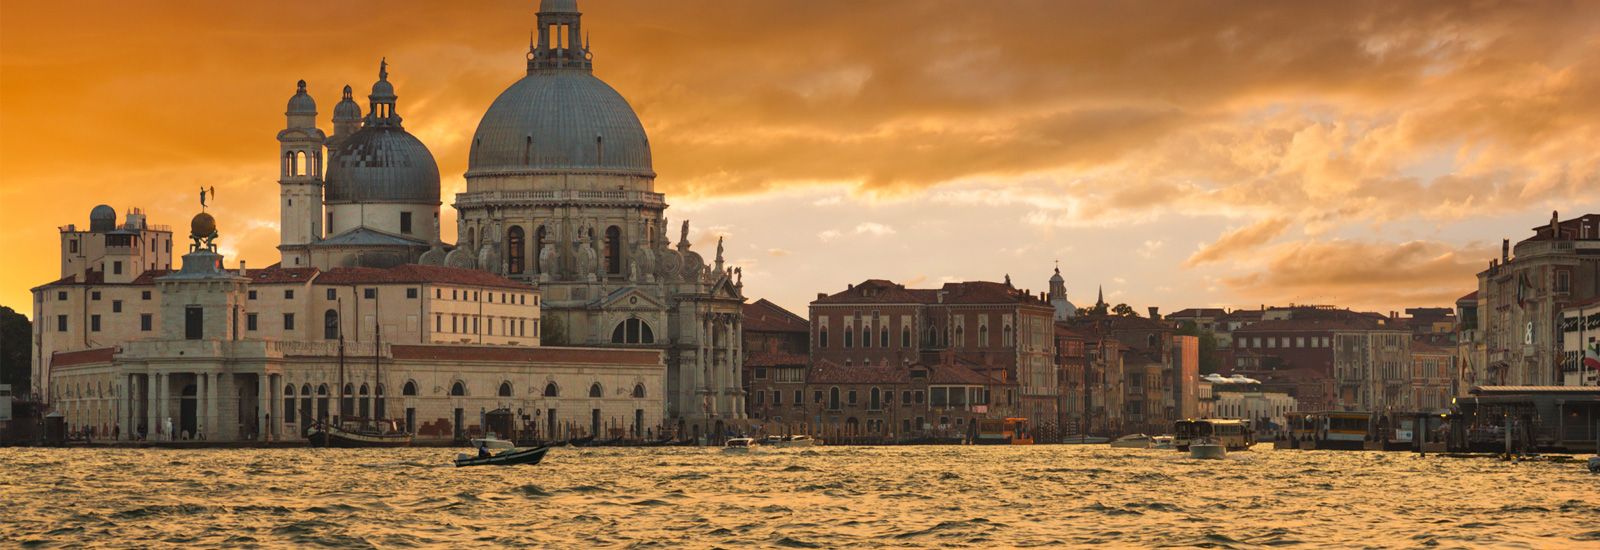 The Grand Canal and Basilica Santa Maria della Salute in Venice, Italy.